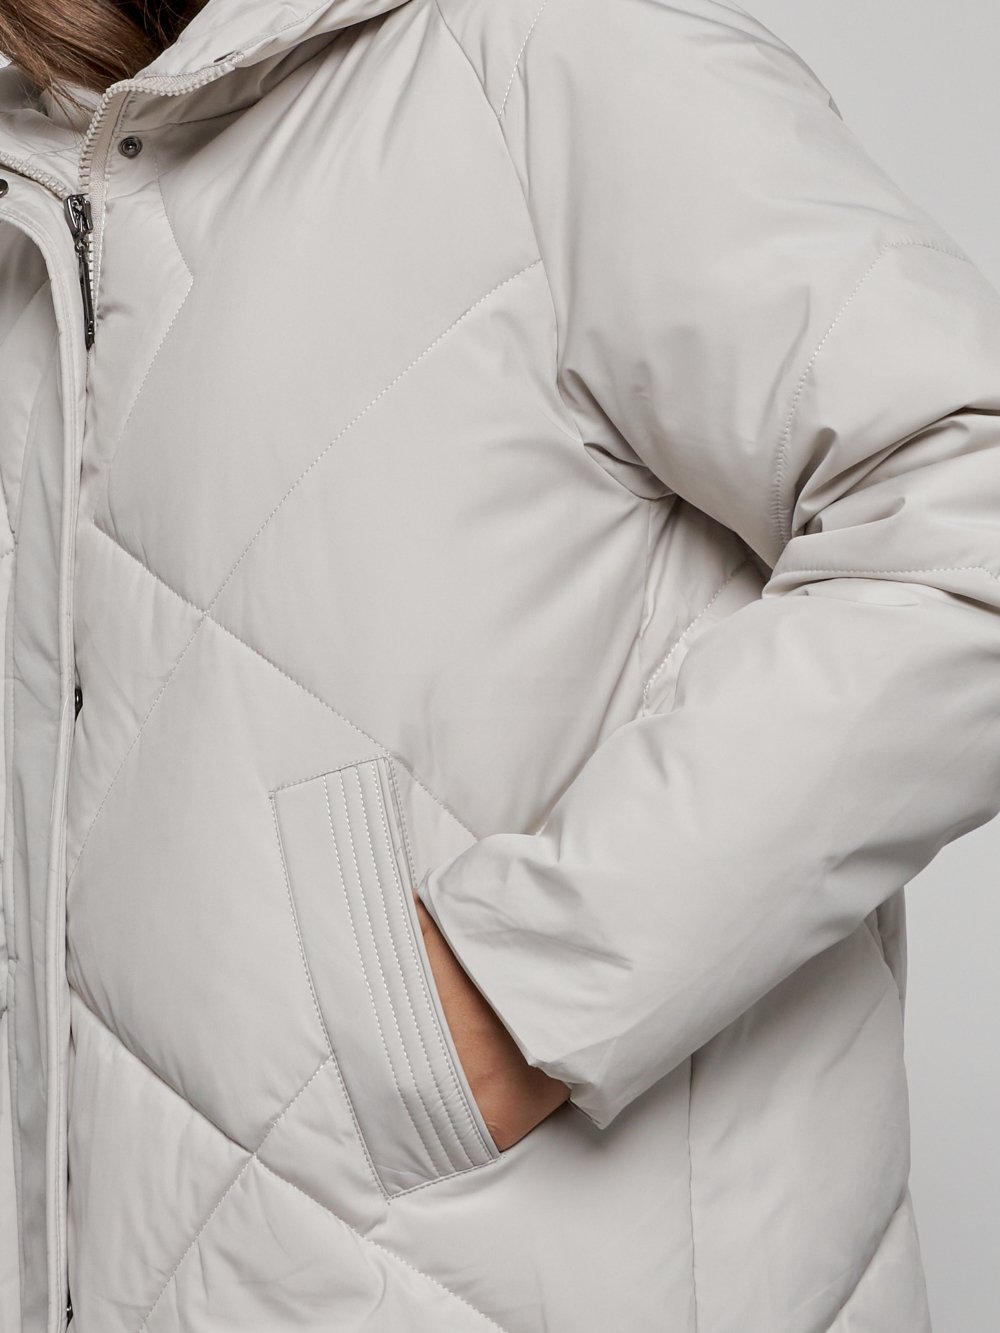 Купить куртку женскую оптом от производителя недорого в Москве 52361SS 1